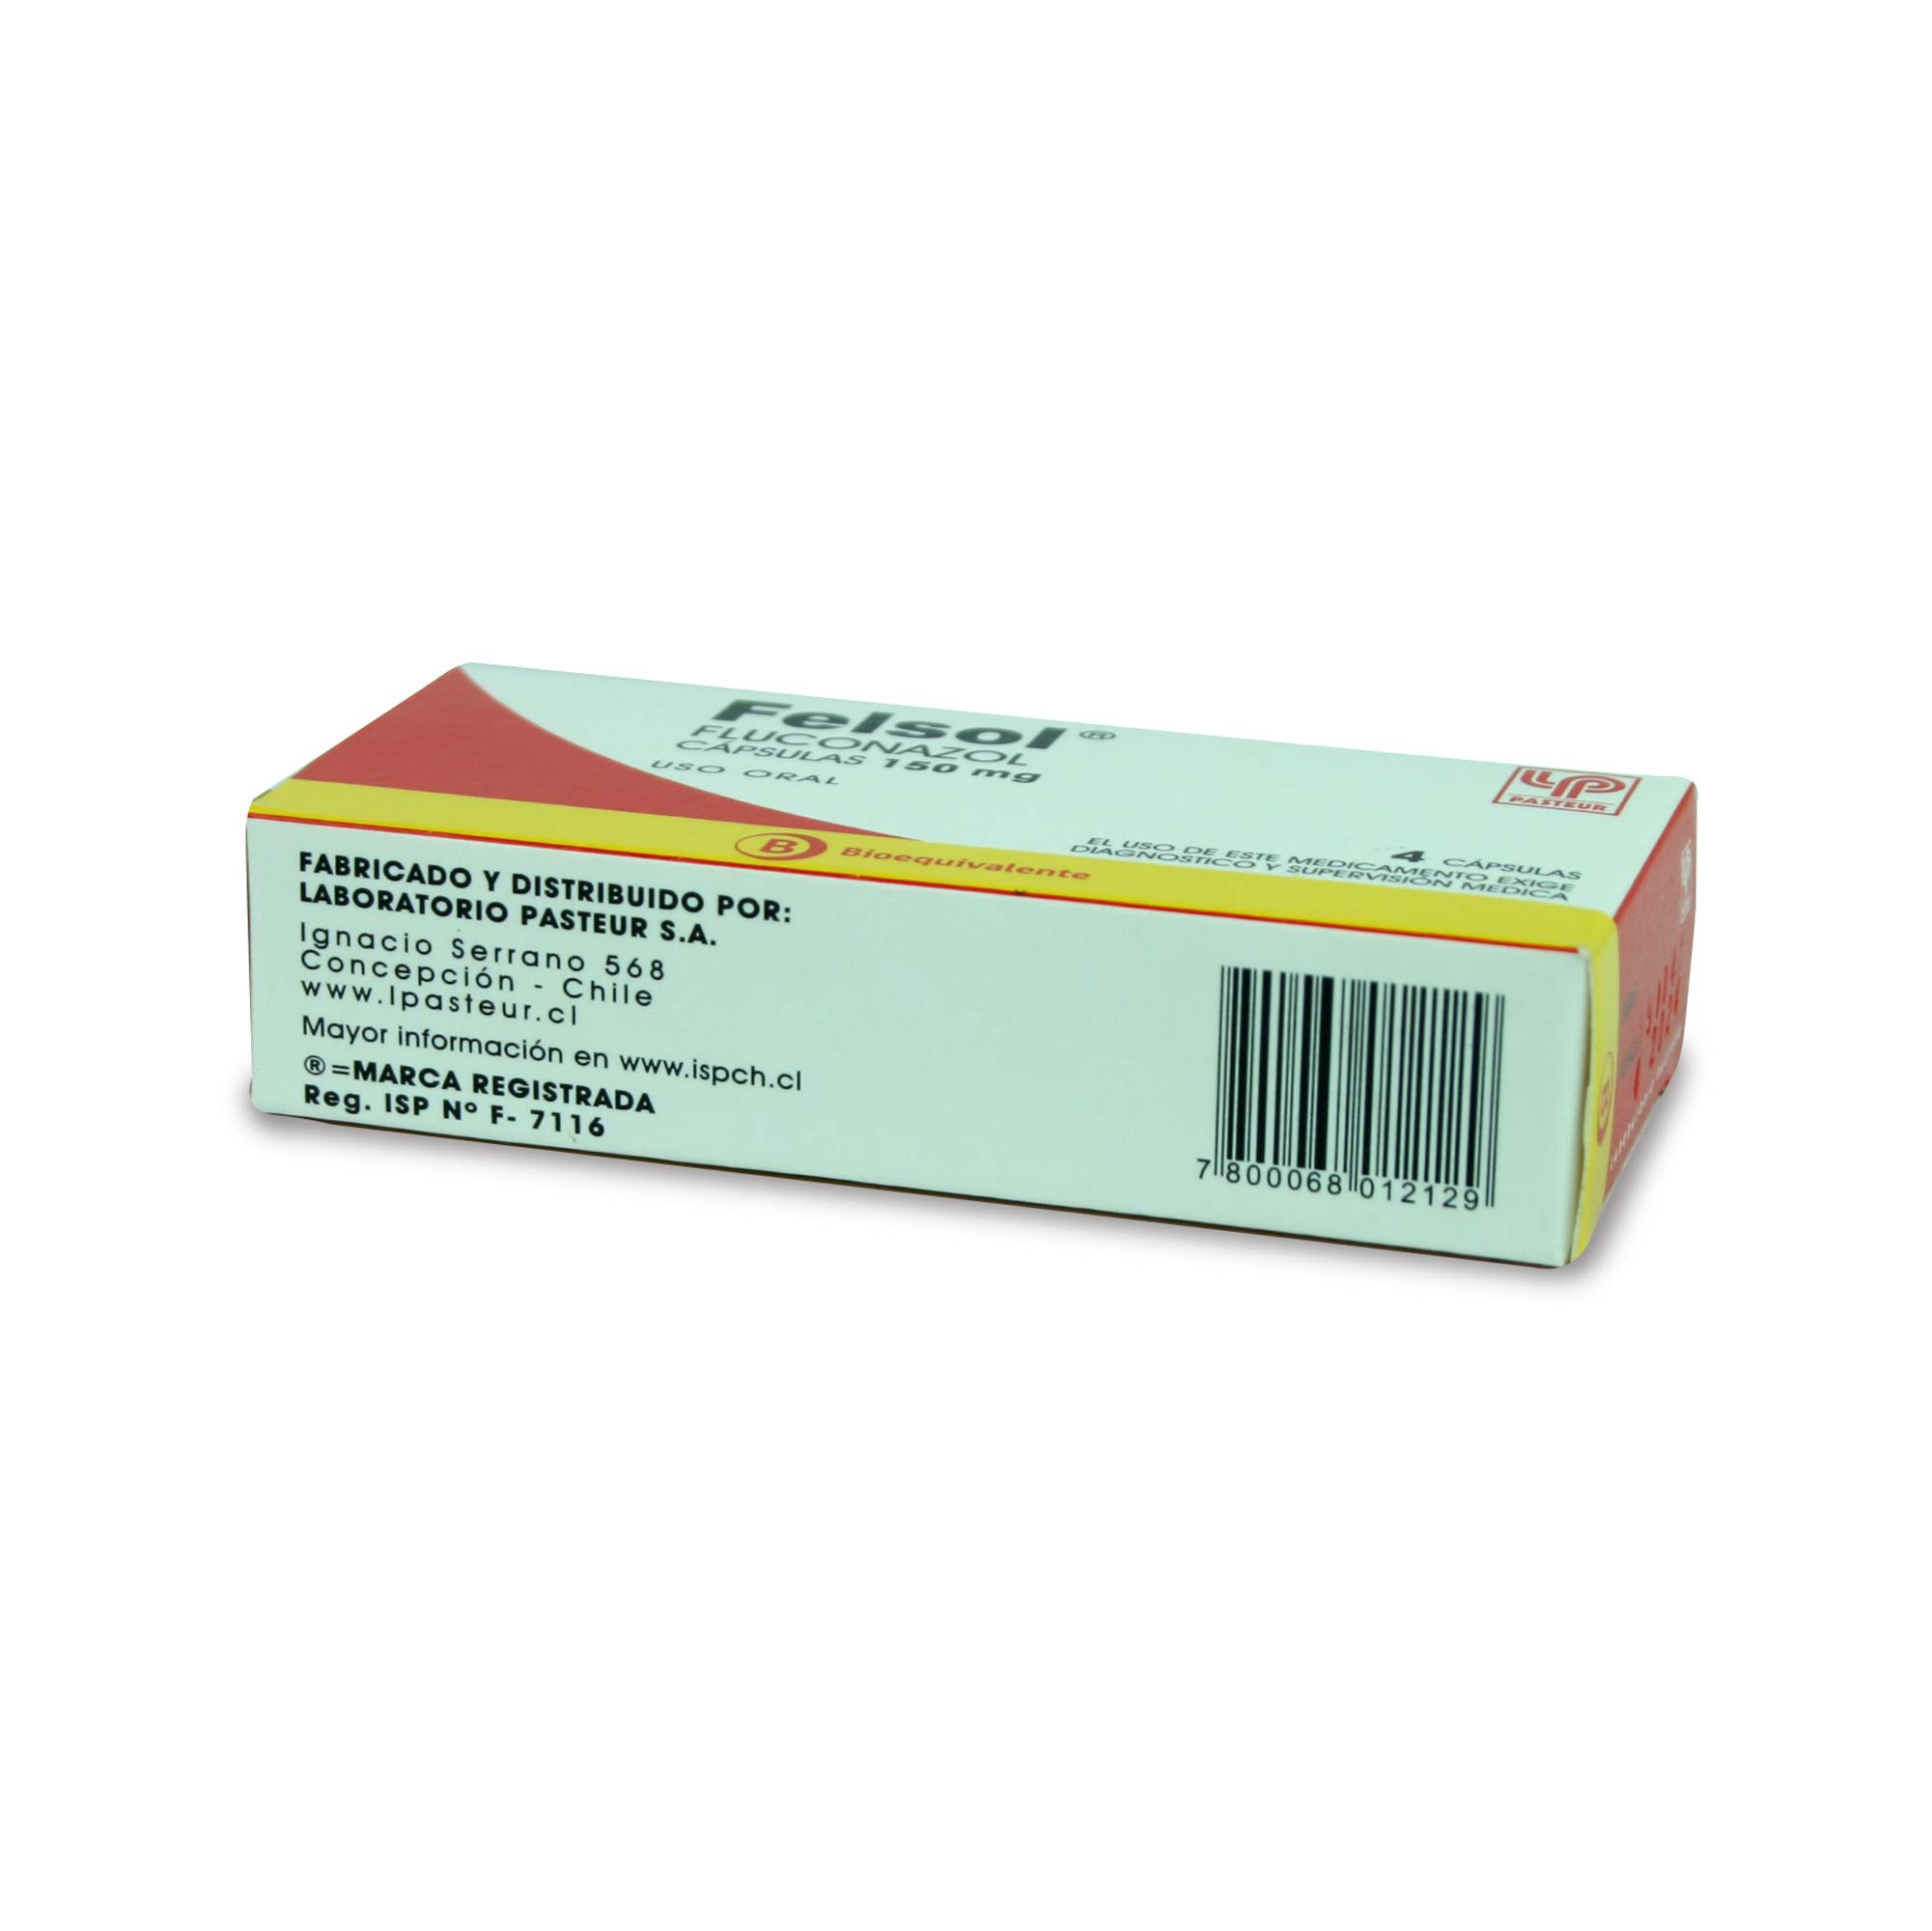 Felsol Fluconazol 150 mg 4 Cápsulas | Farmacias Cruz Verde